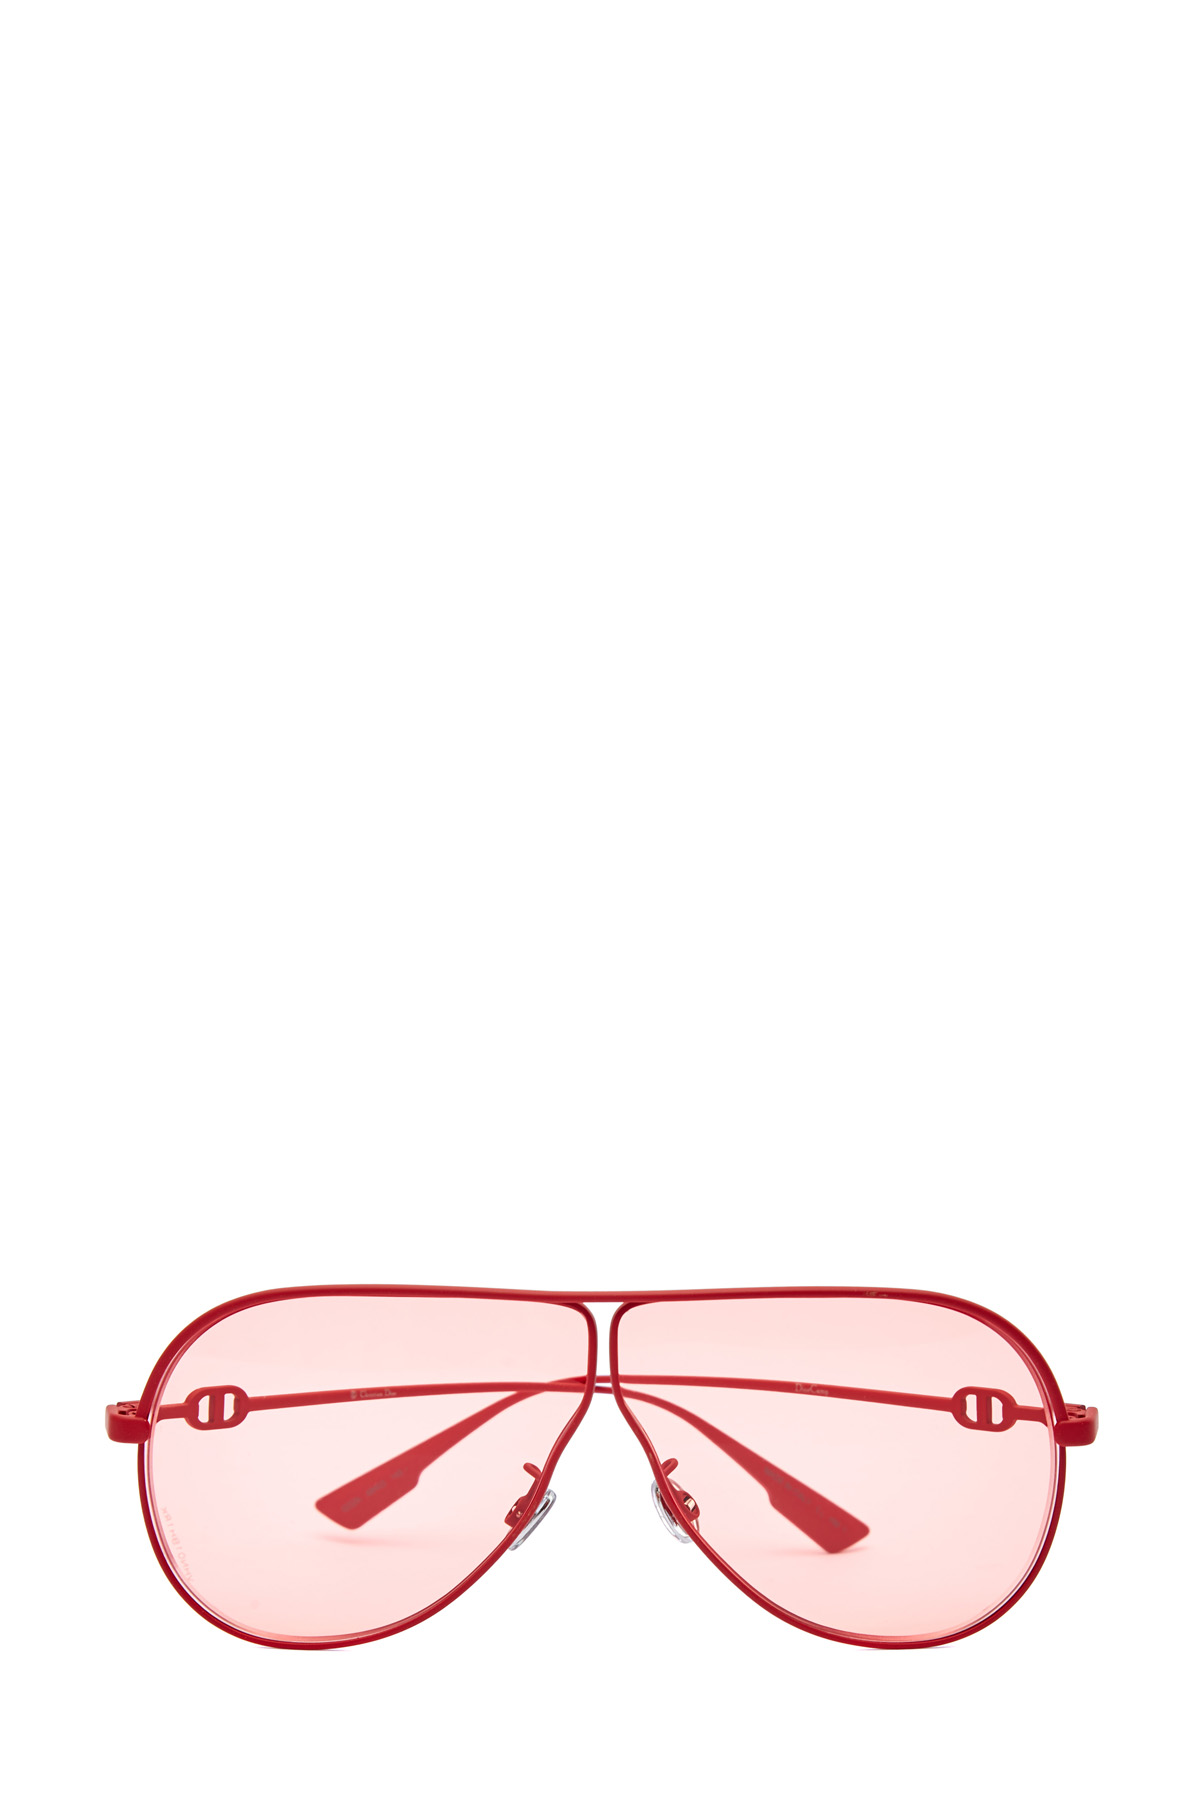 Очки-авиаторы в тонкой прорезиненной оправе DIOR (sunglasses) women, цвет красный, размер XL - фото 1